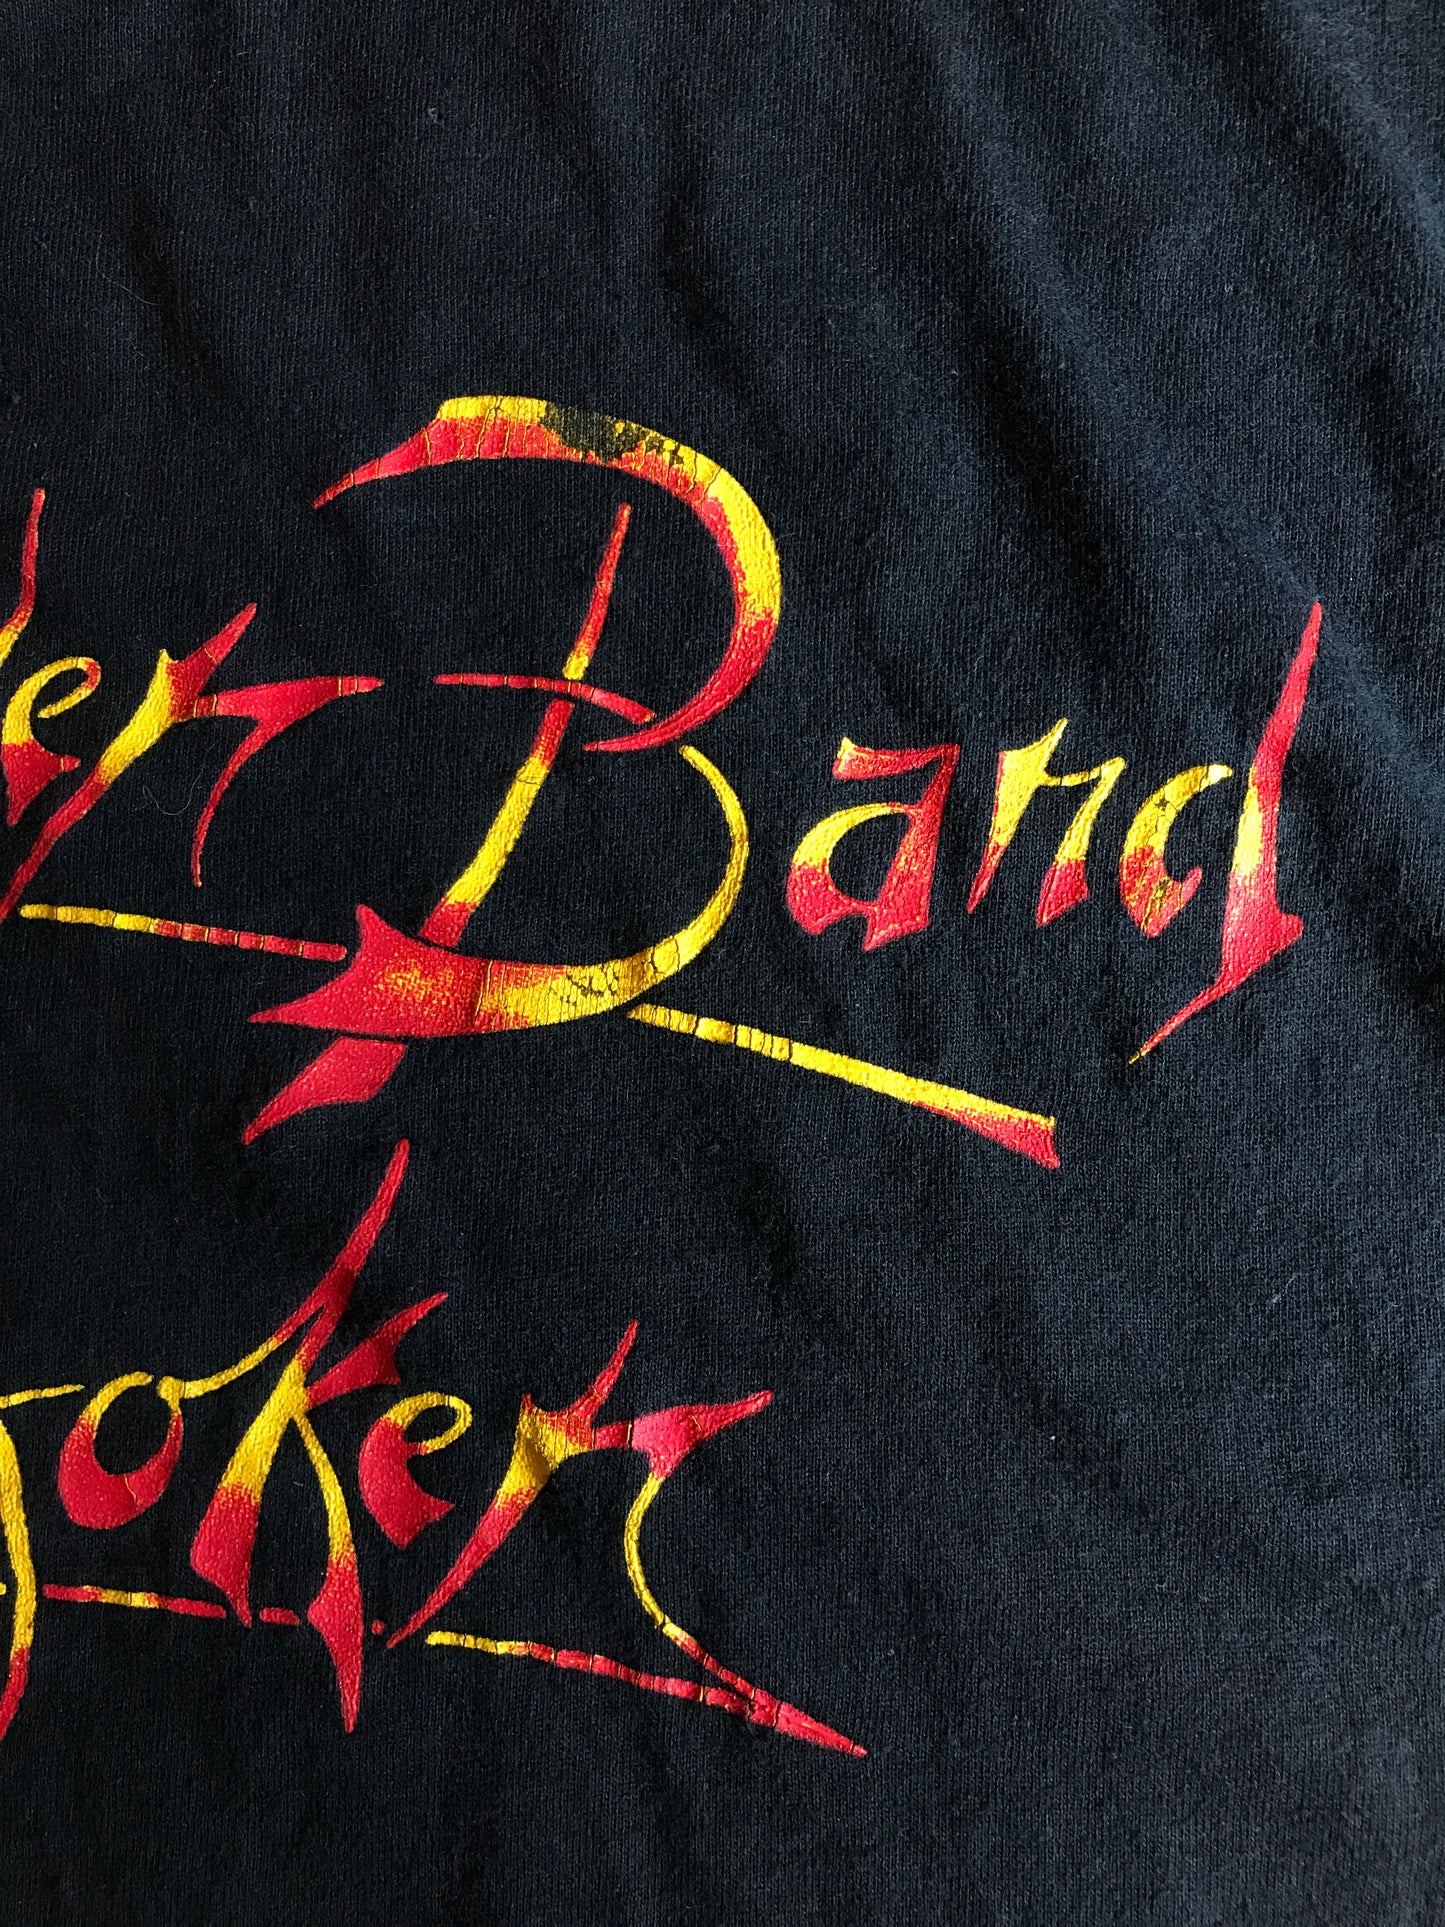 Steven Miller Band Vintage T-shirt